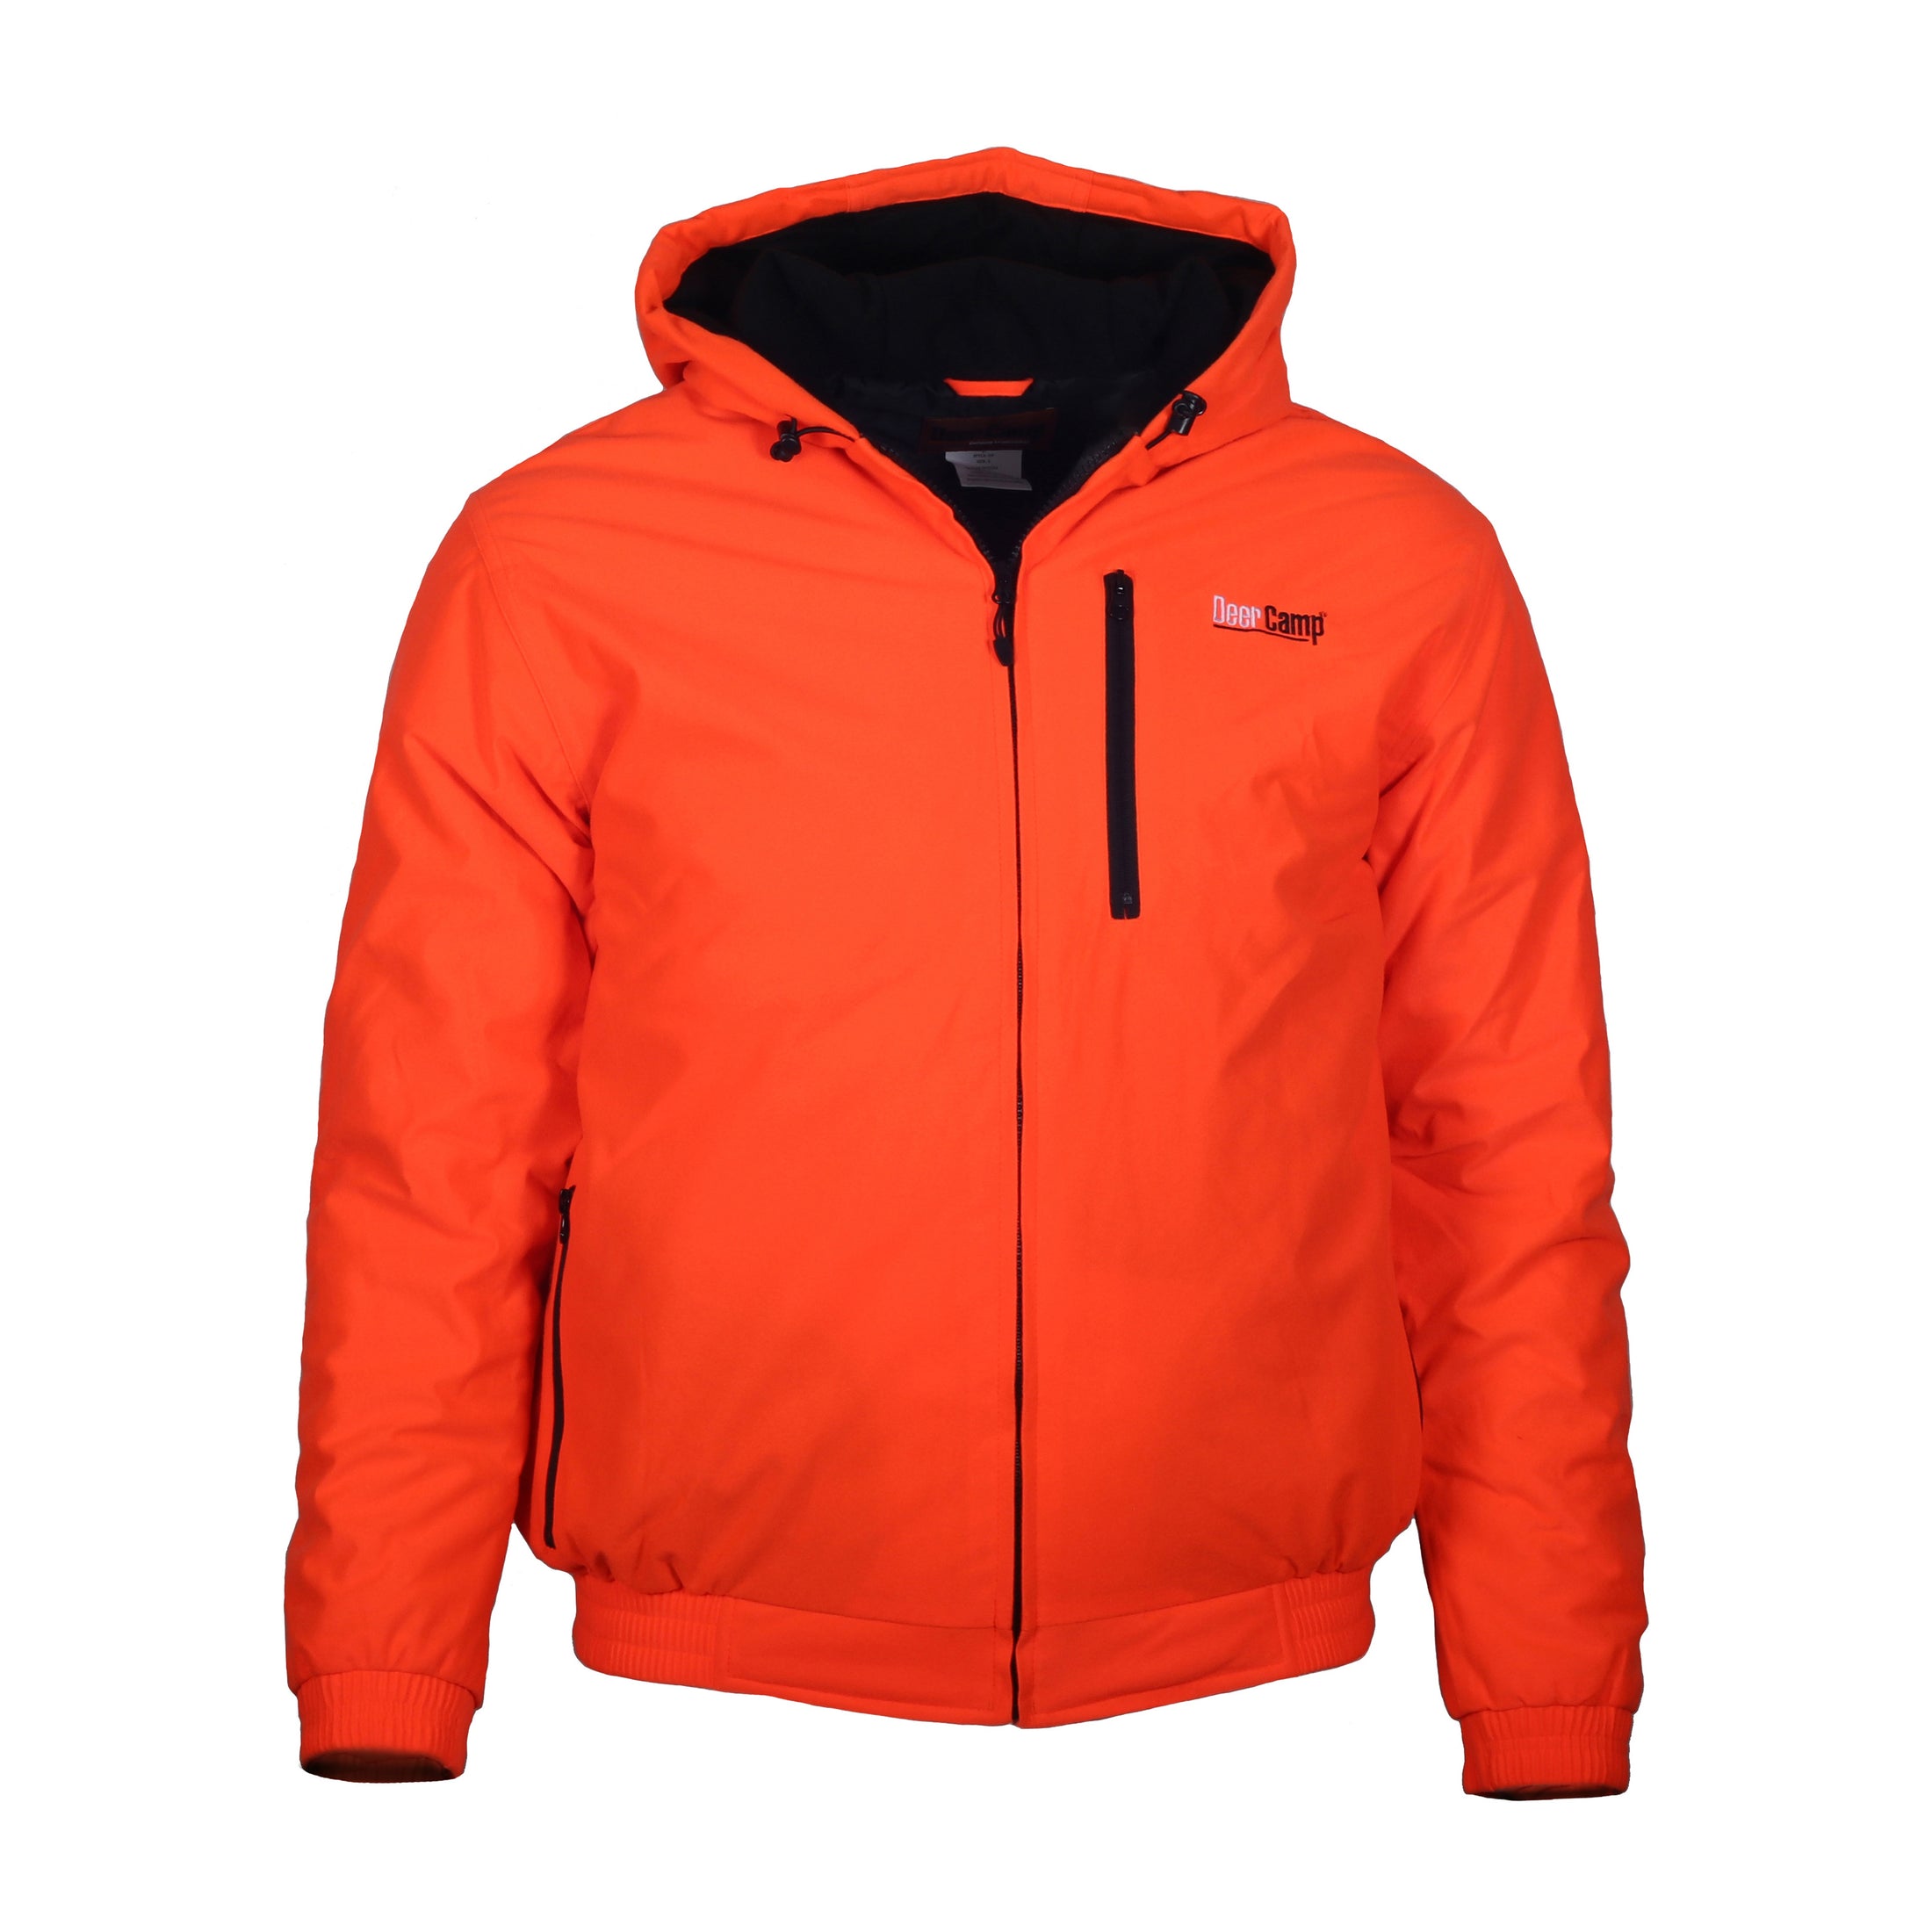 Deer Camp jacket front (blaze orange)